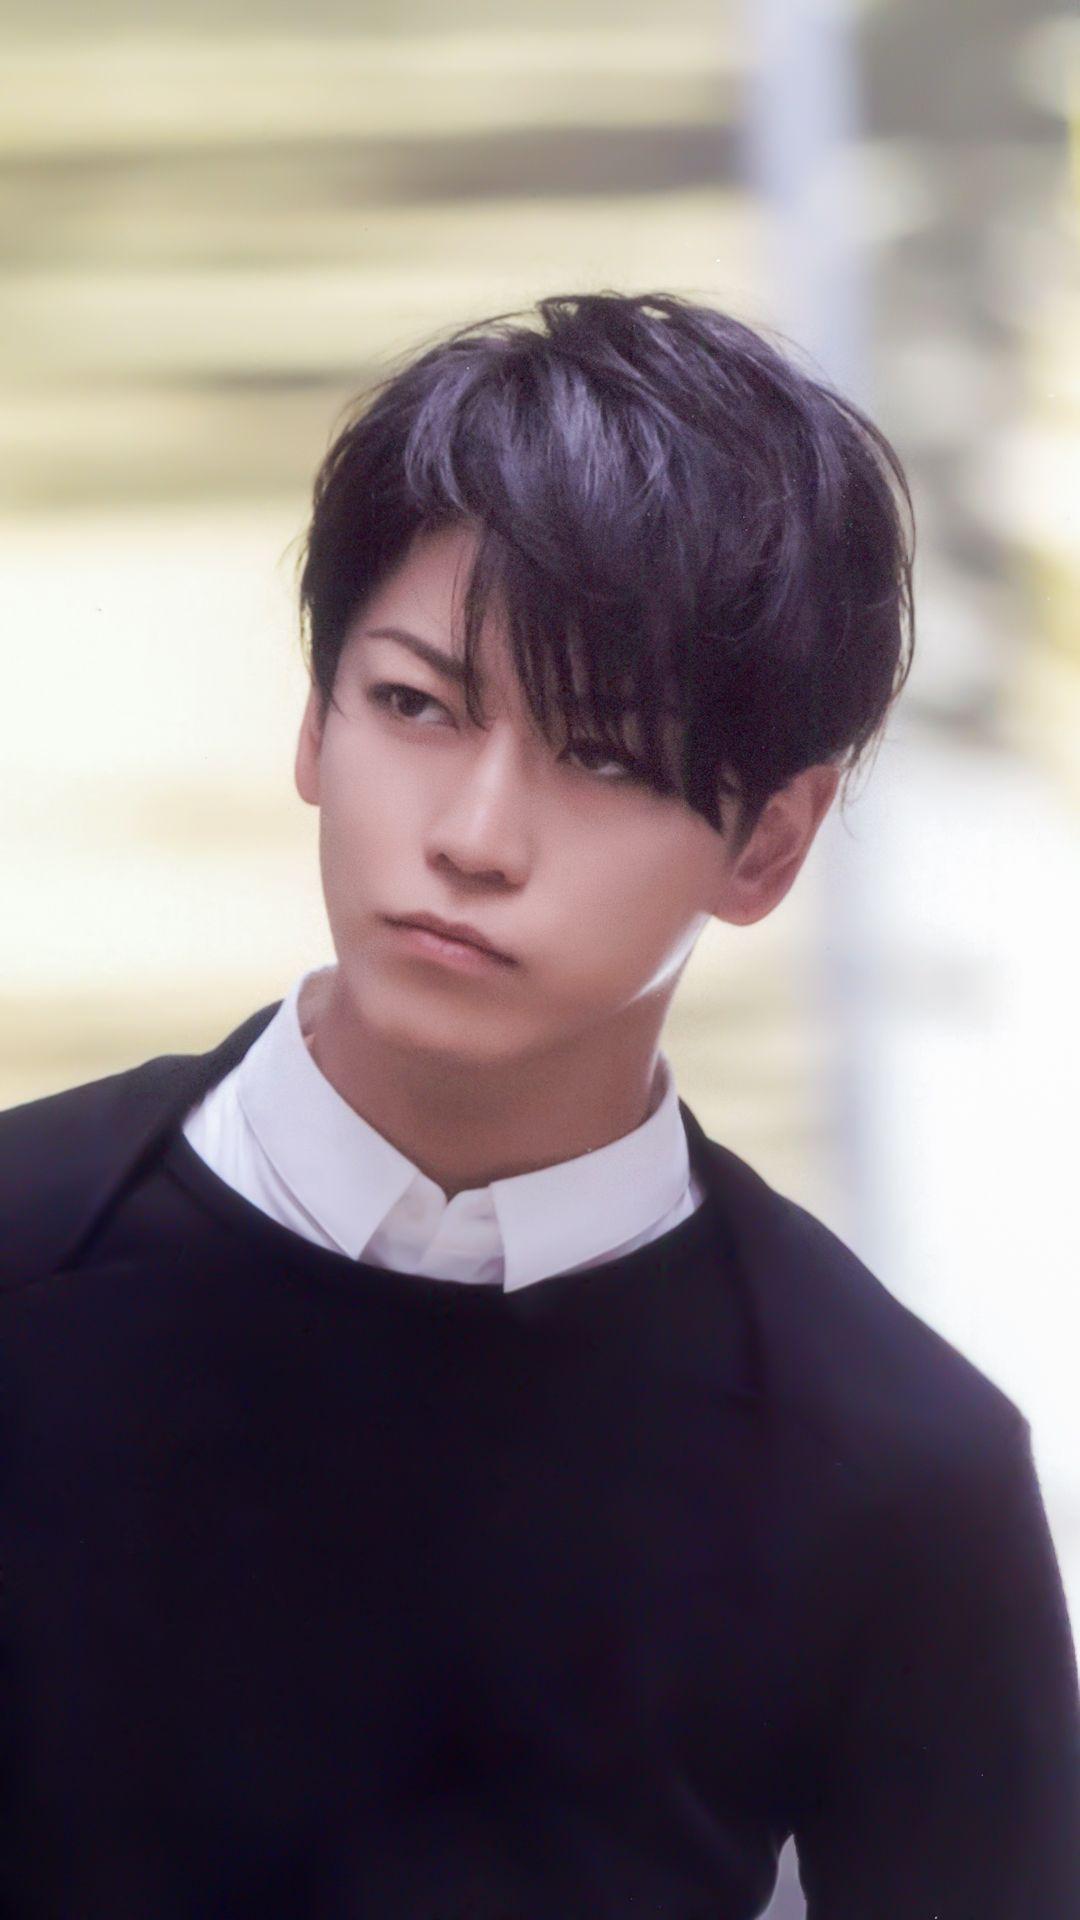 Kamenashi Kazuya (KAT-TUN) đứng hạng 8 với 96 phiếu bình chọn trong BXH những mỹ nam Nhật Bản sở hữu "khuôn mặt nước tương" (Shoyu-gao) chuẩn chính thống đẹp nhất. (Nguồn: Internet)